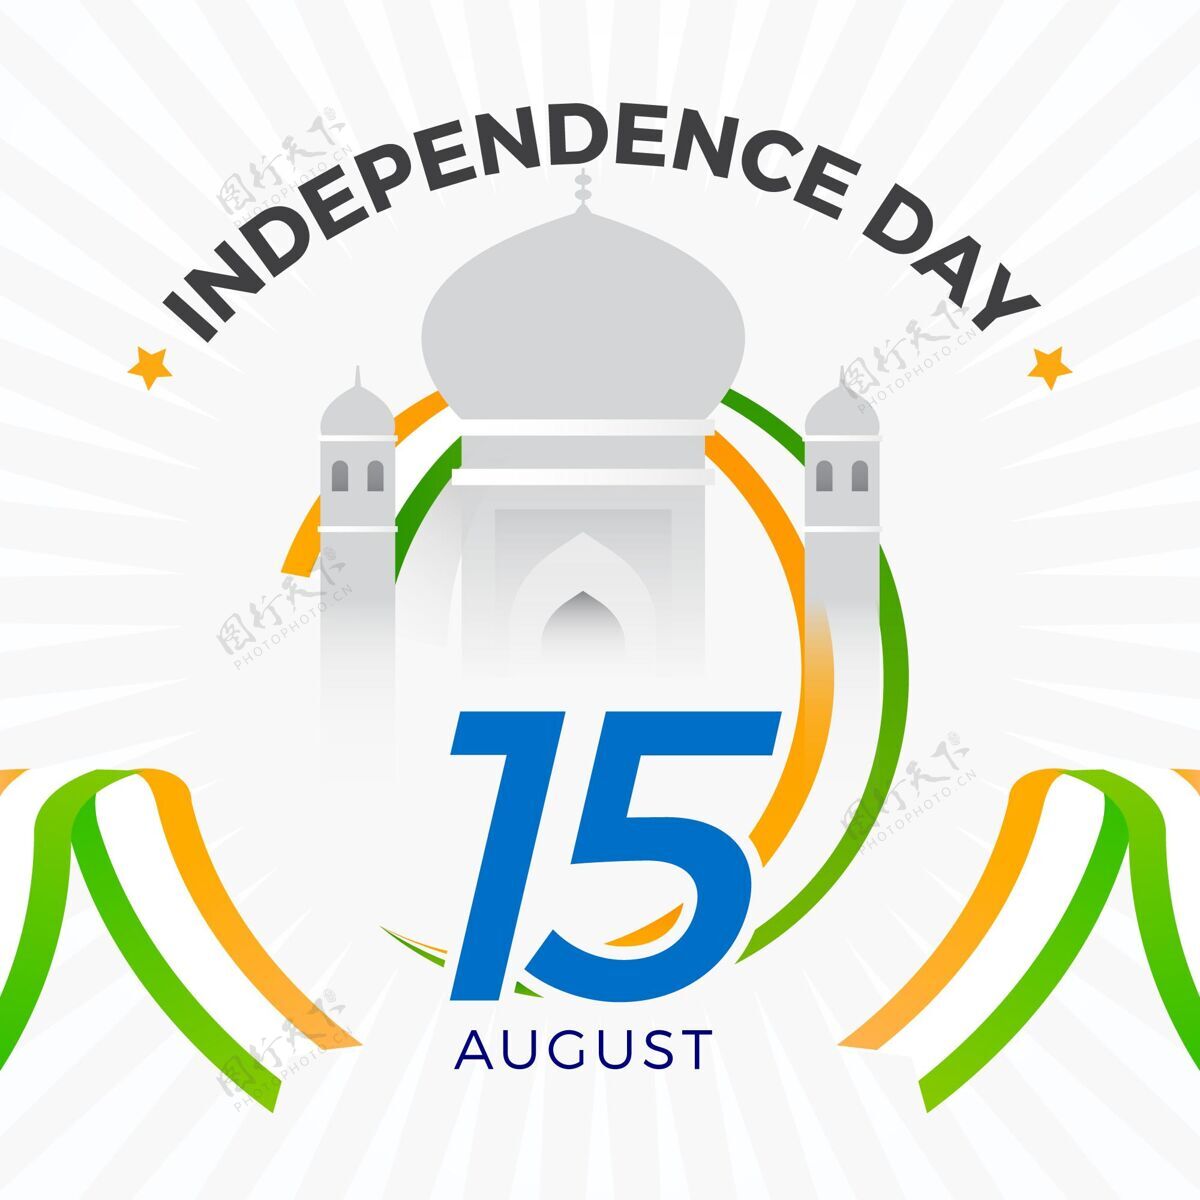 印度印度独立日插画庆祝独立日节日